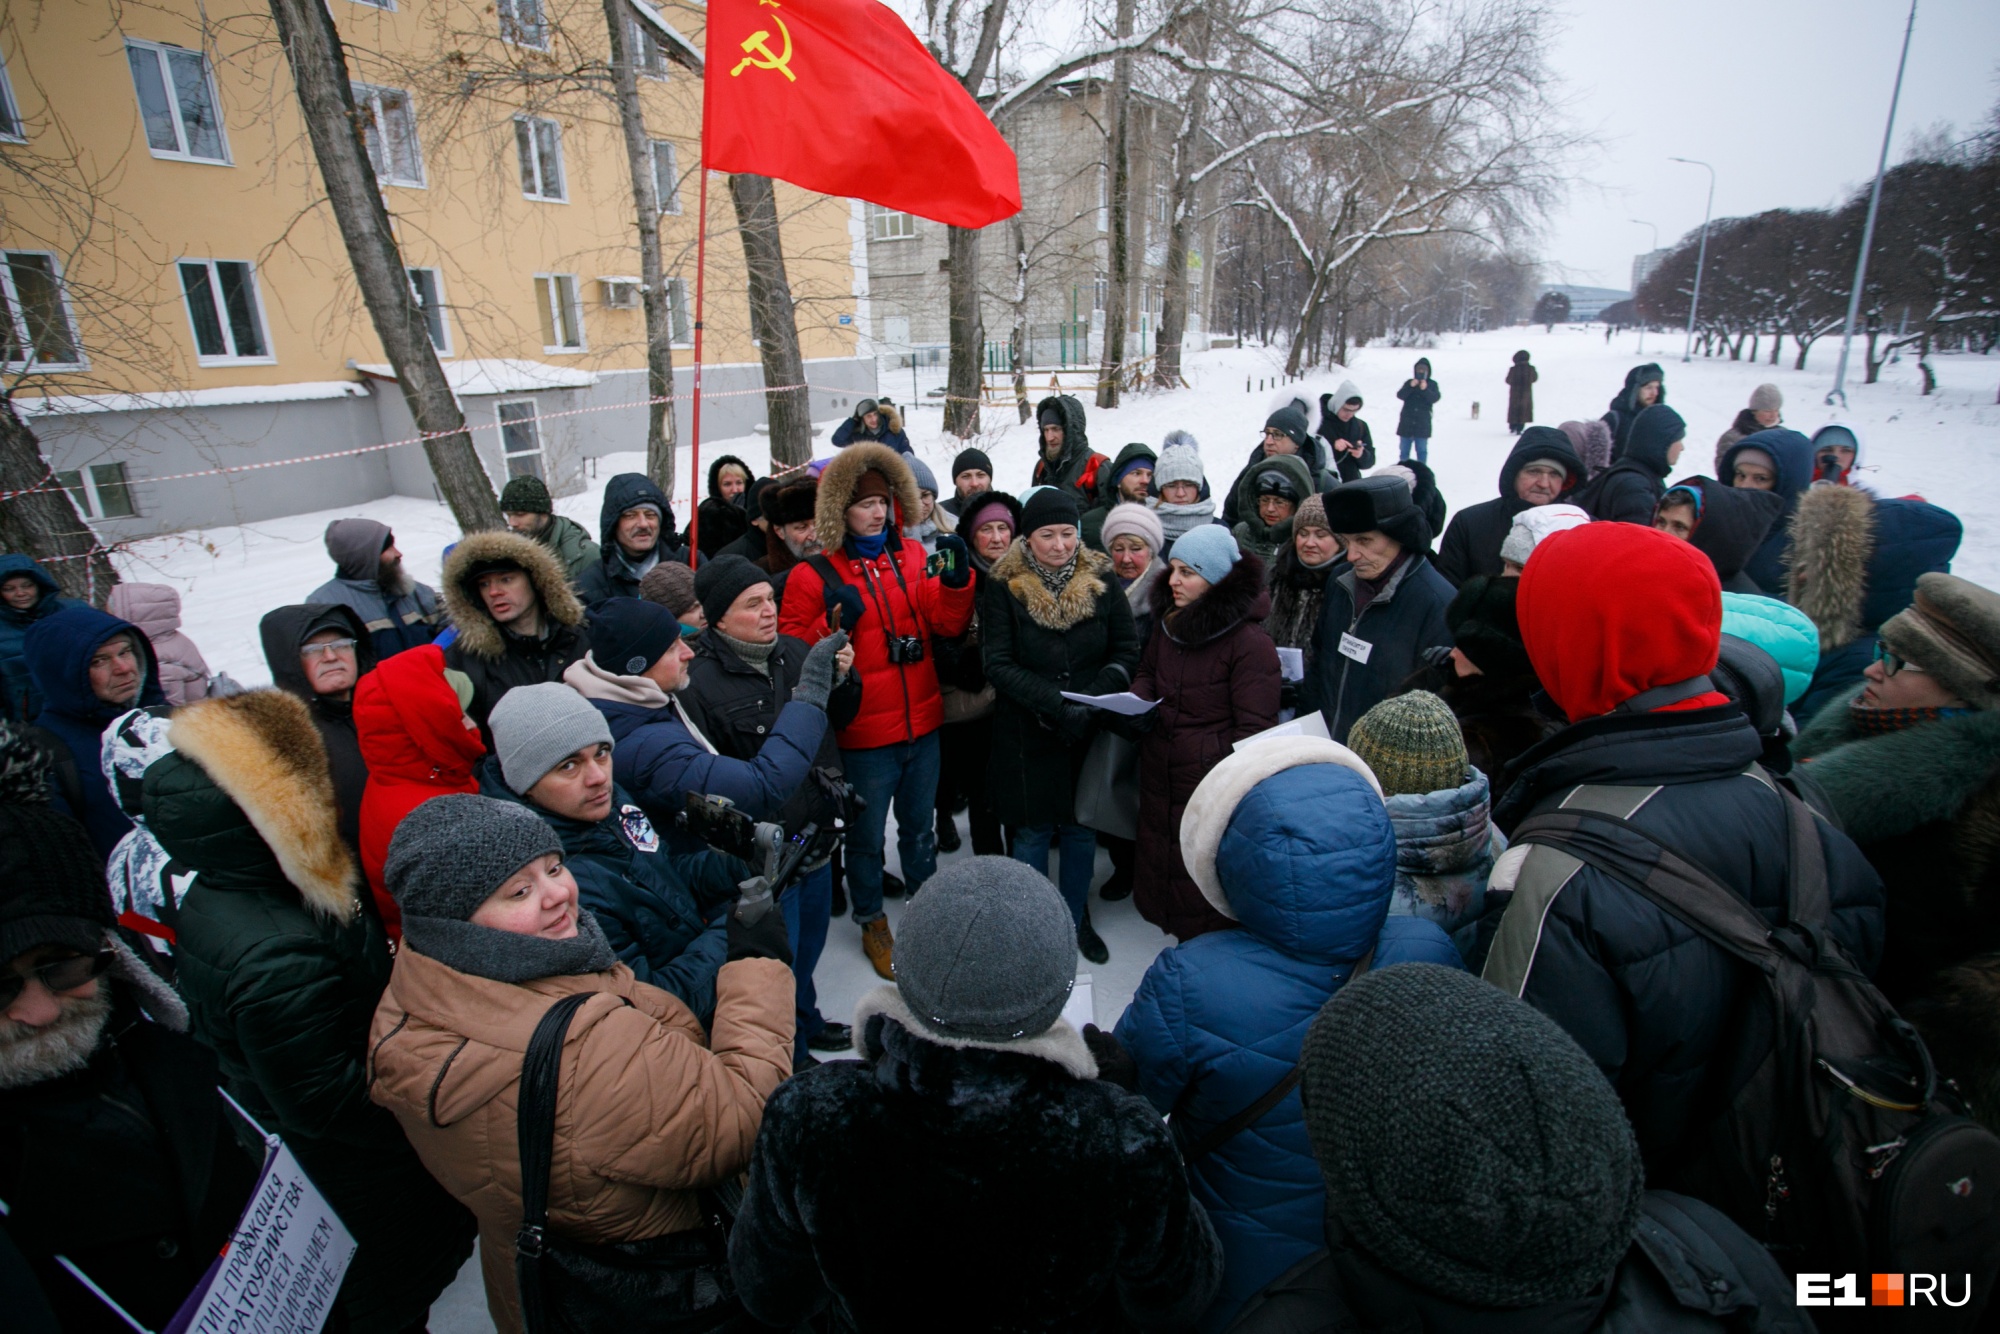 Плакатов больше, чем людей. 10 главных кадров с массового пикета против QR-кодов в Екатеринбурге